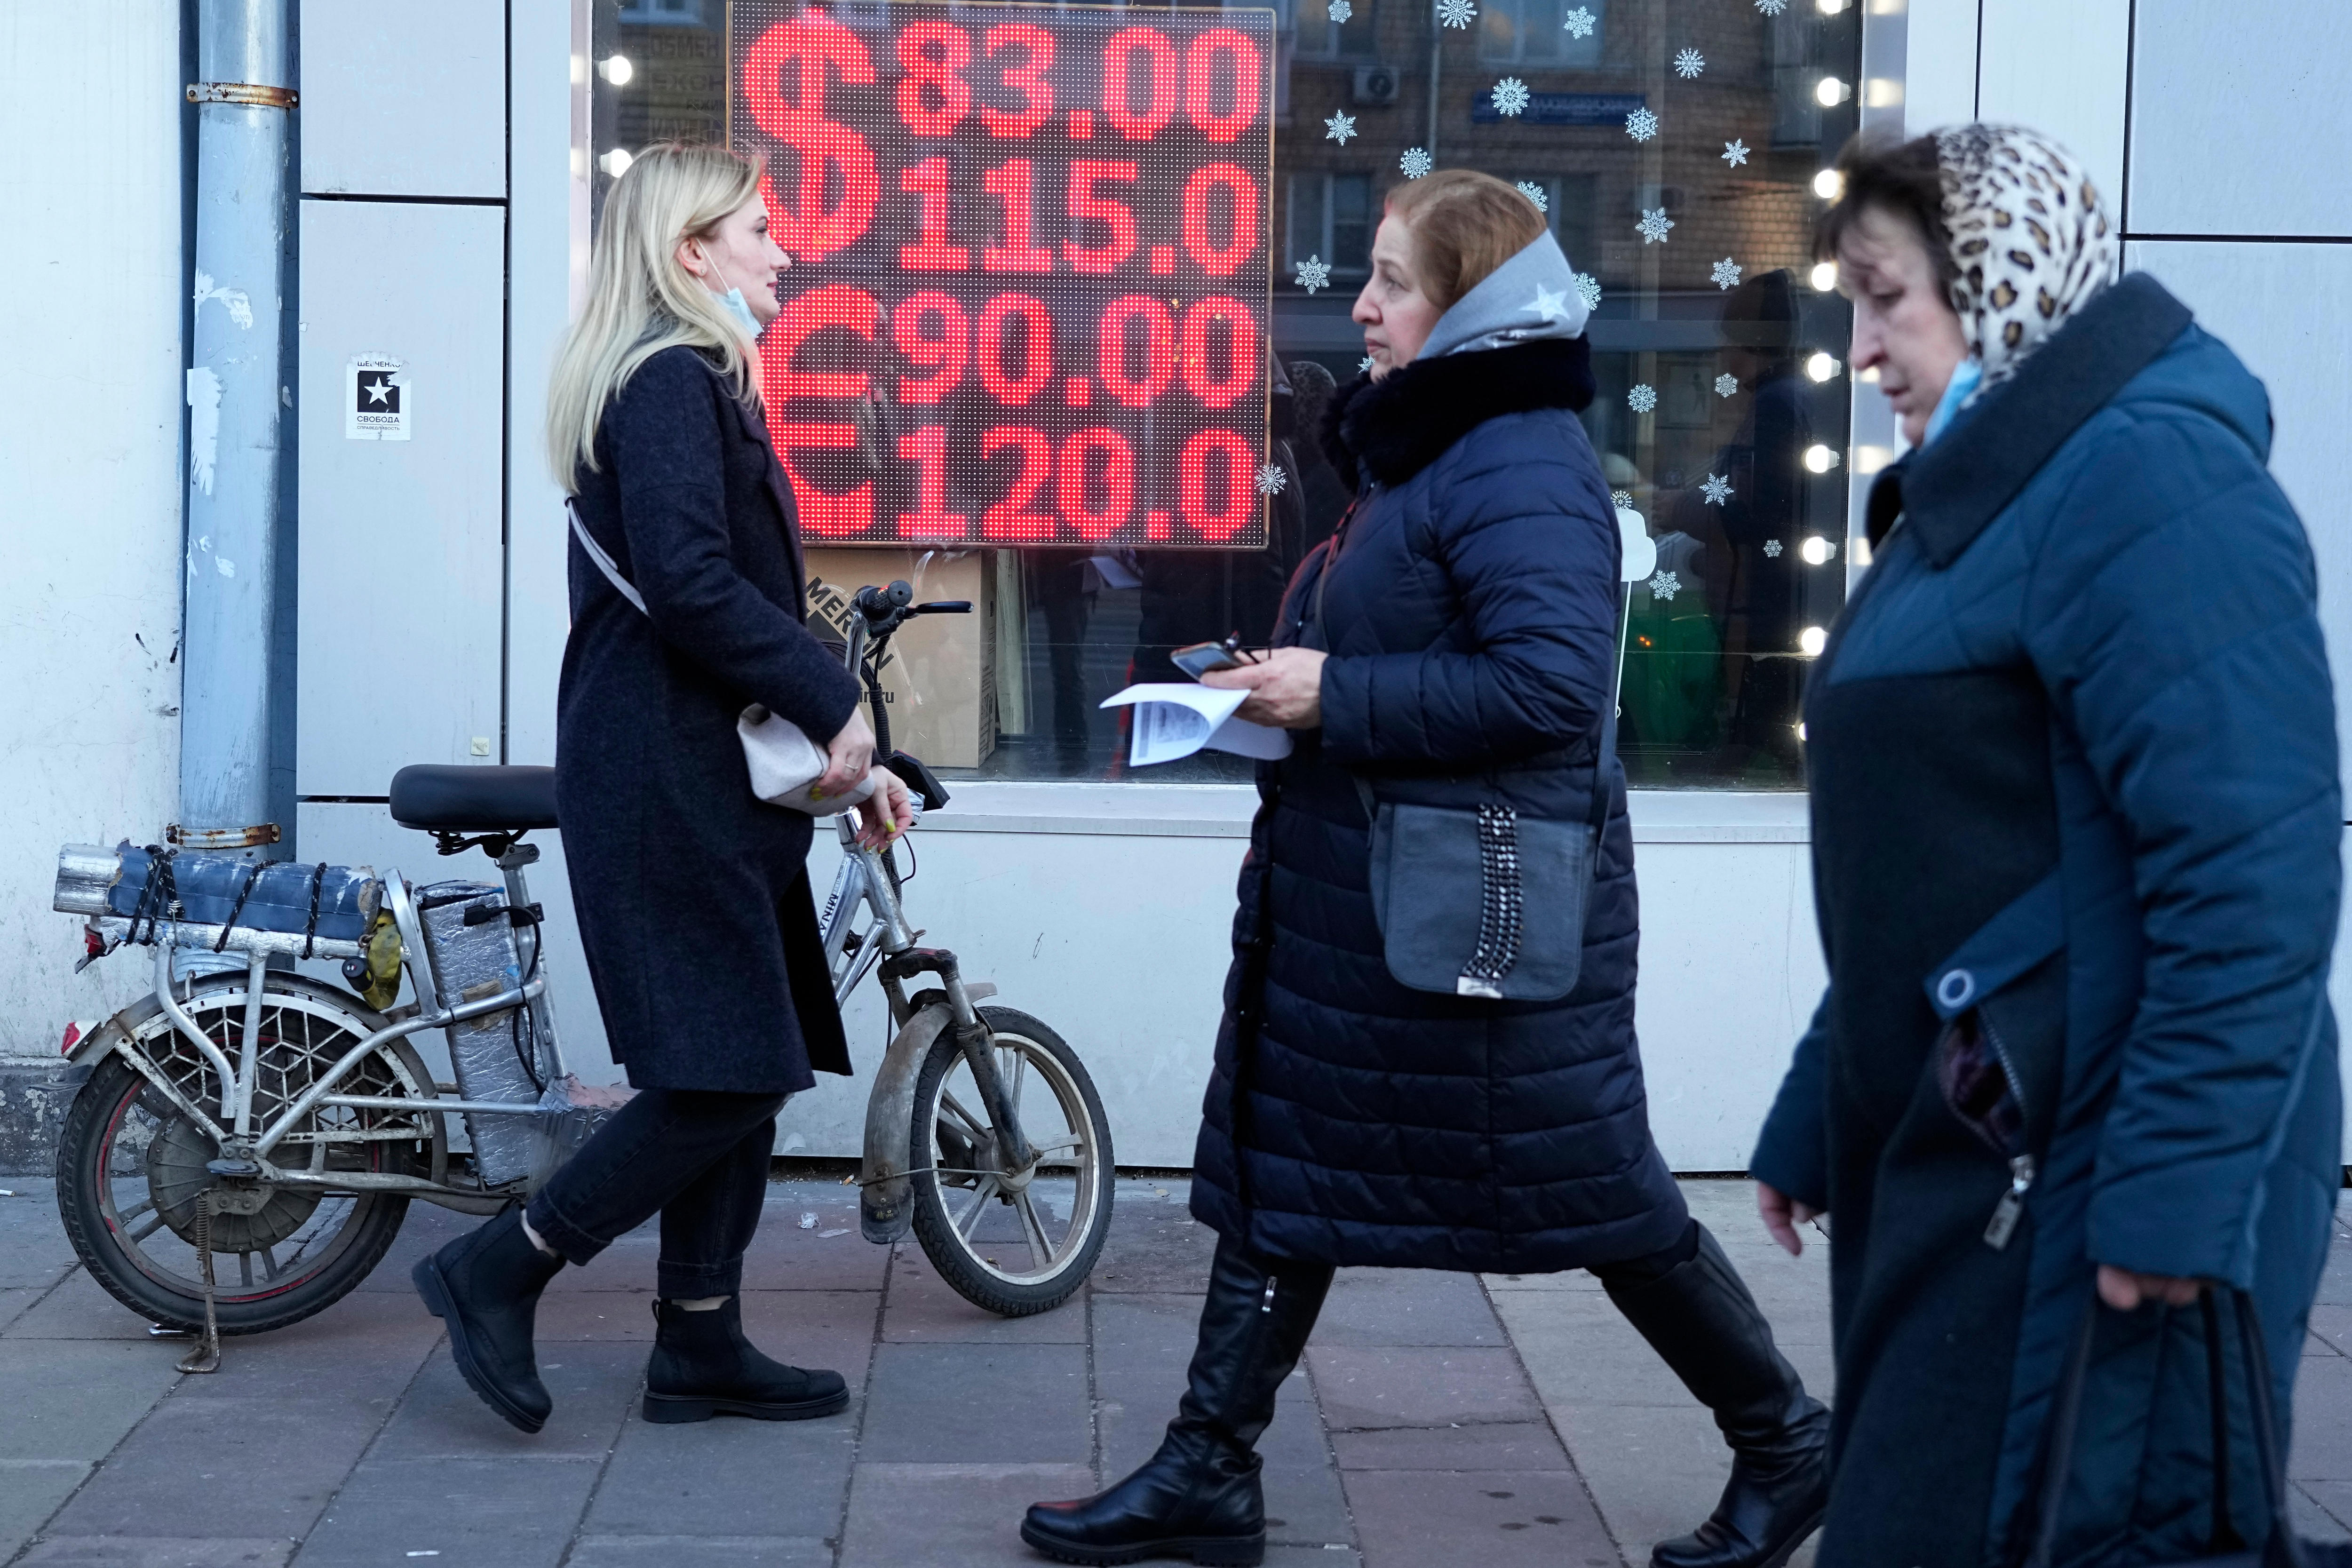 俄罗斯妇女走过显示货币汇率图像的屏幕